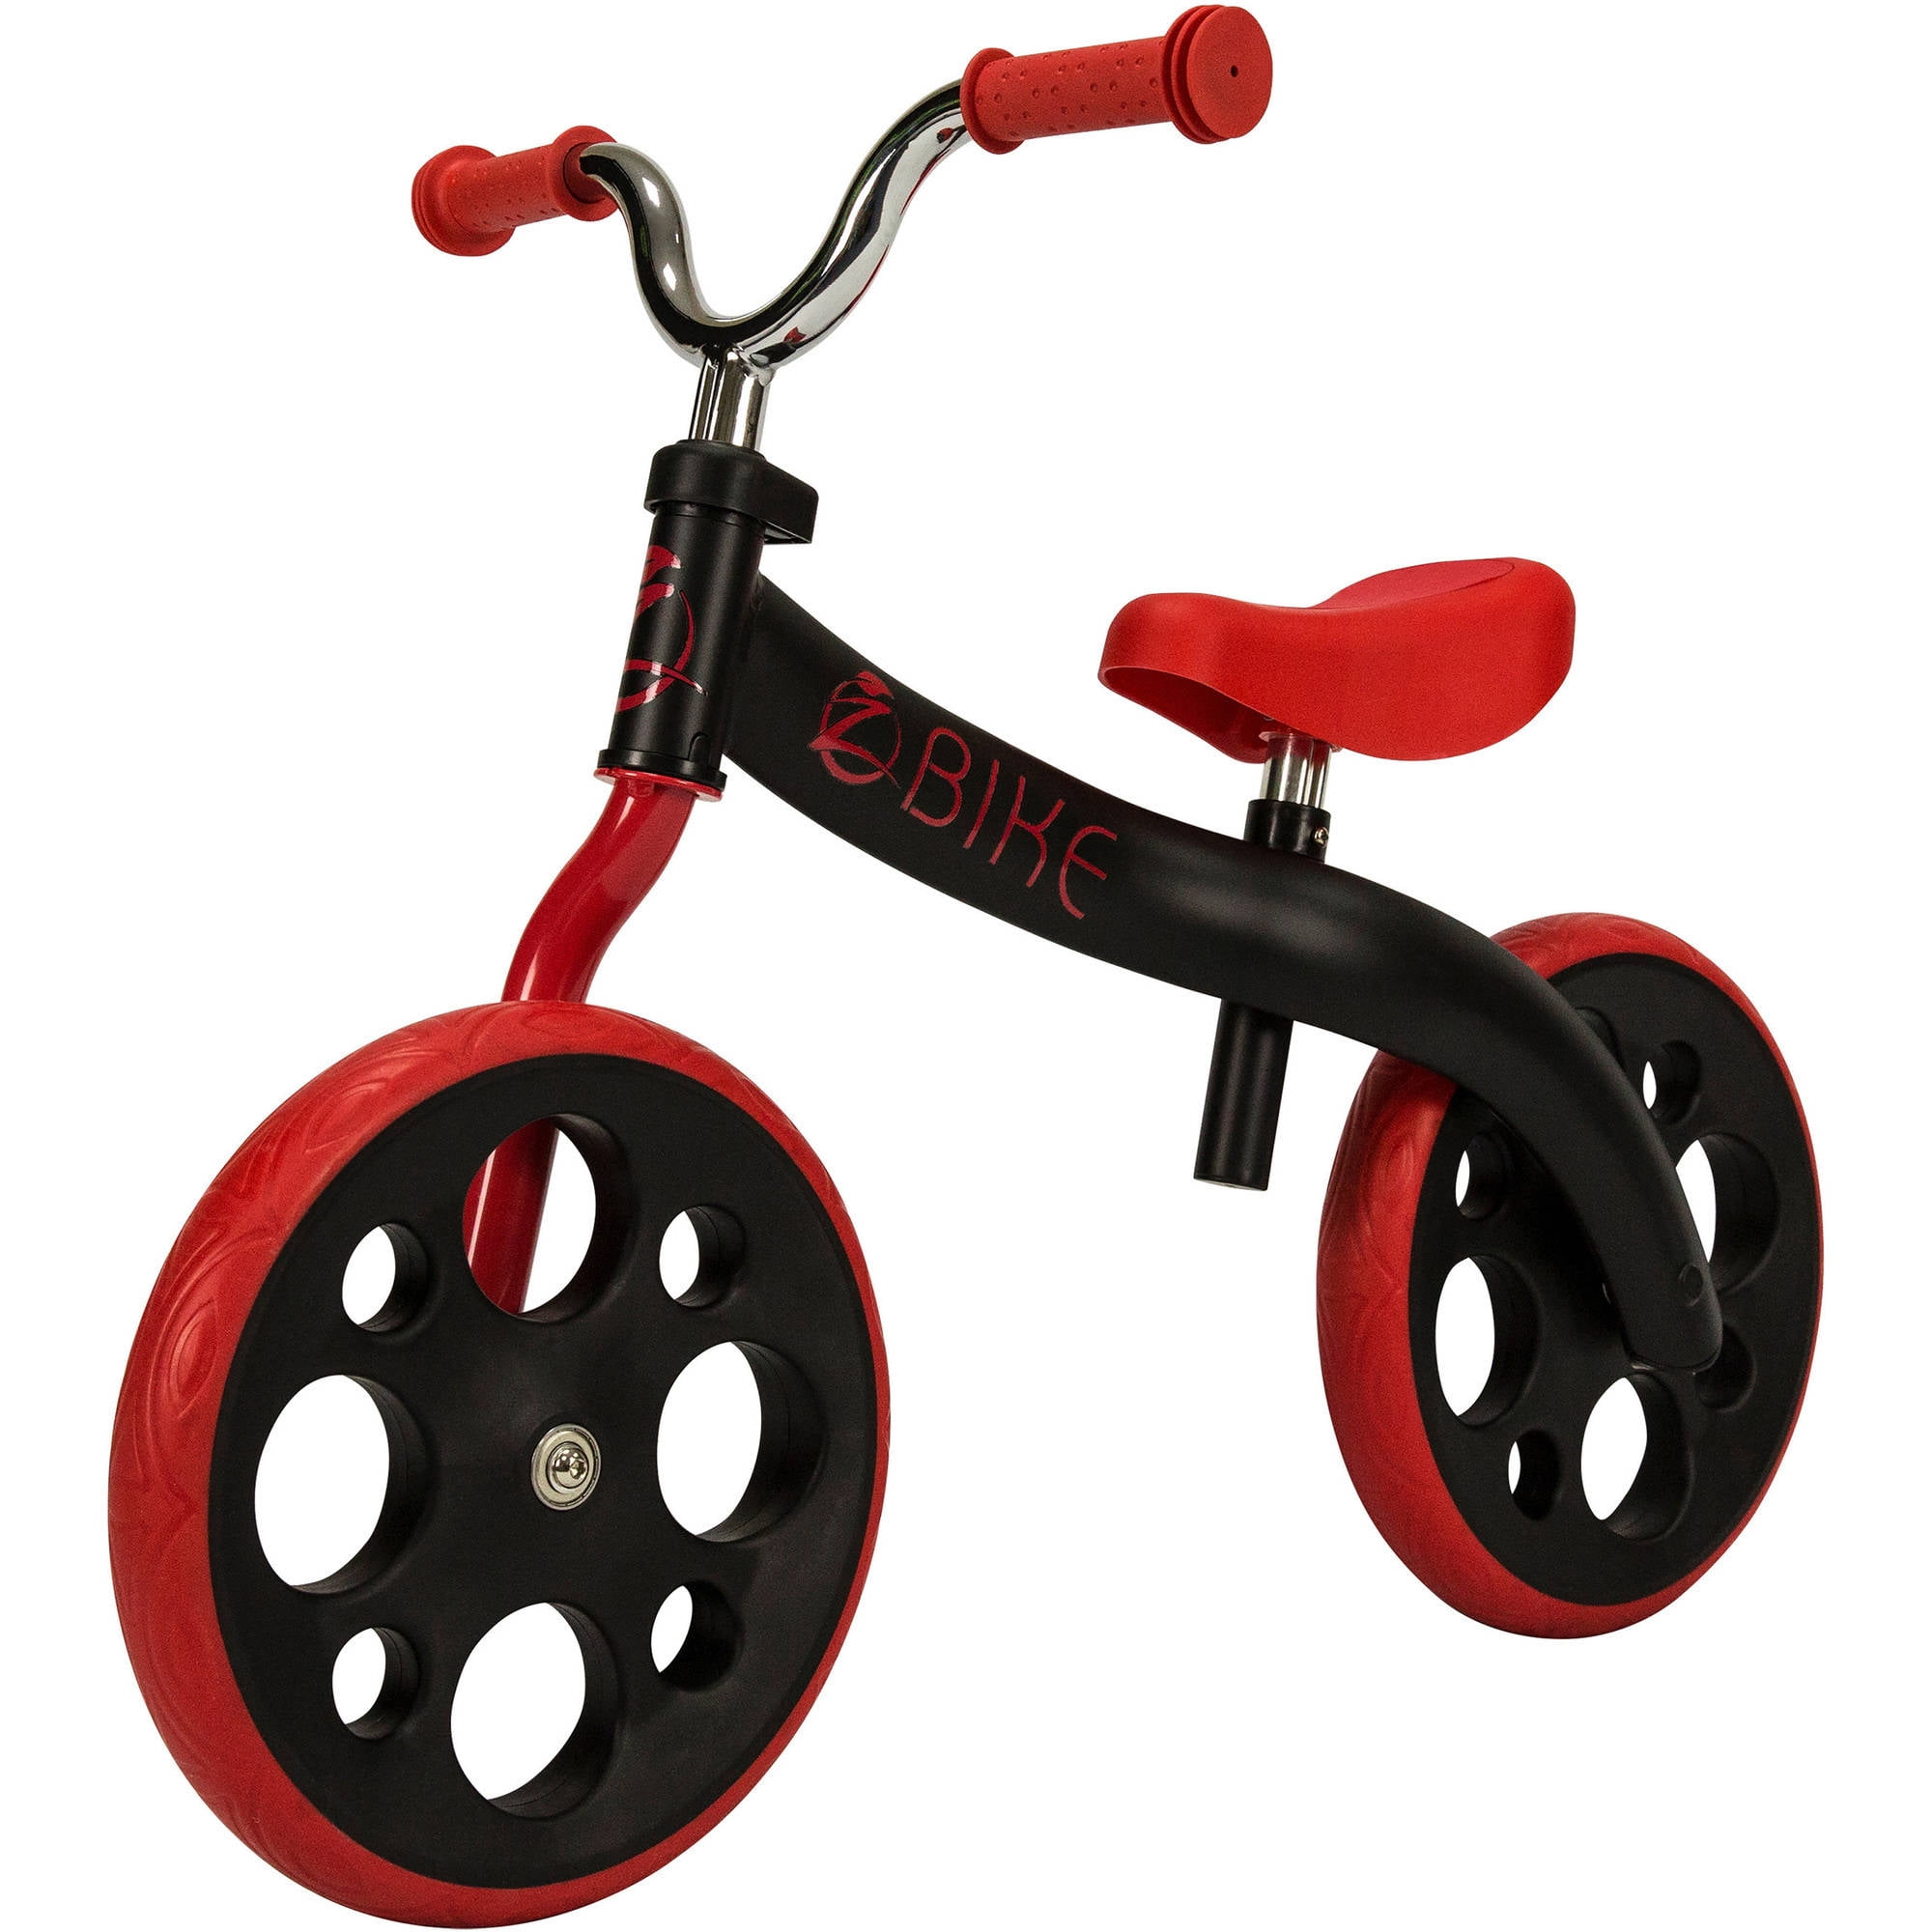 Zycom Z-Bike Childs Balance Bicycle Plus Free Delivery* 